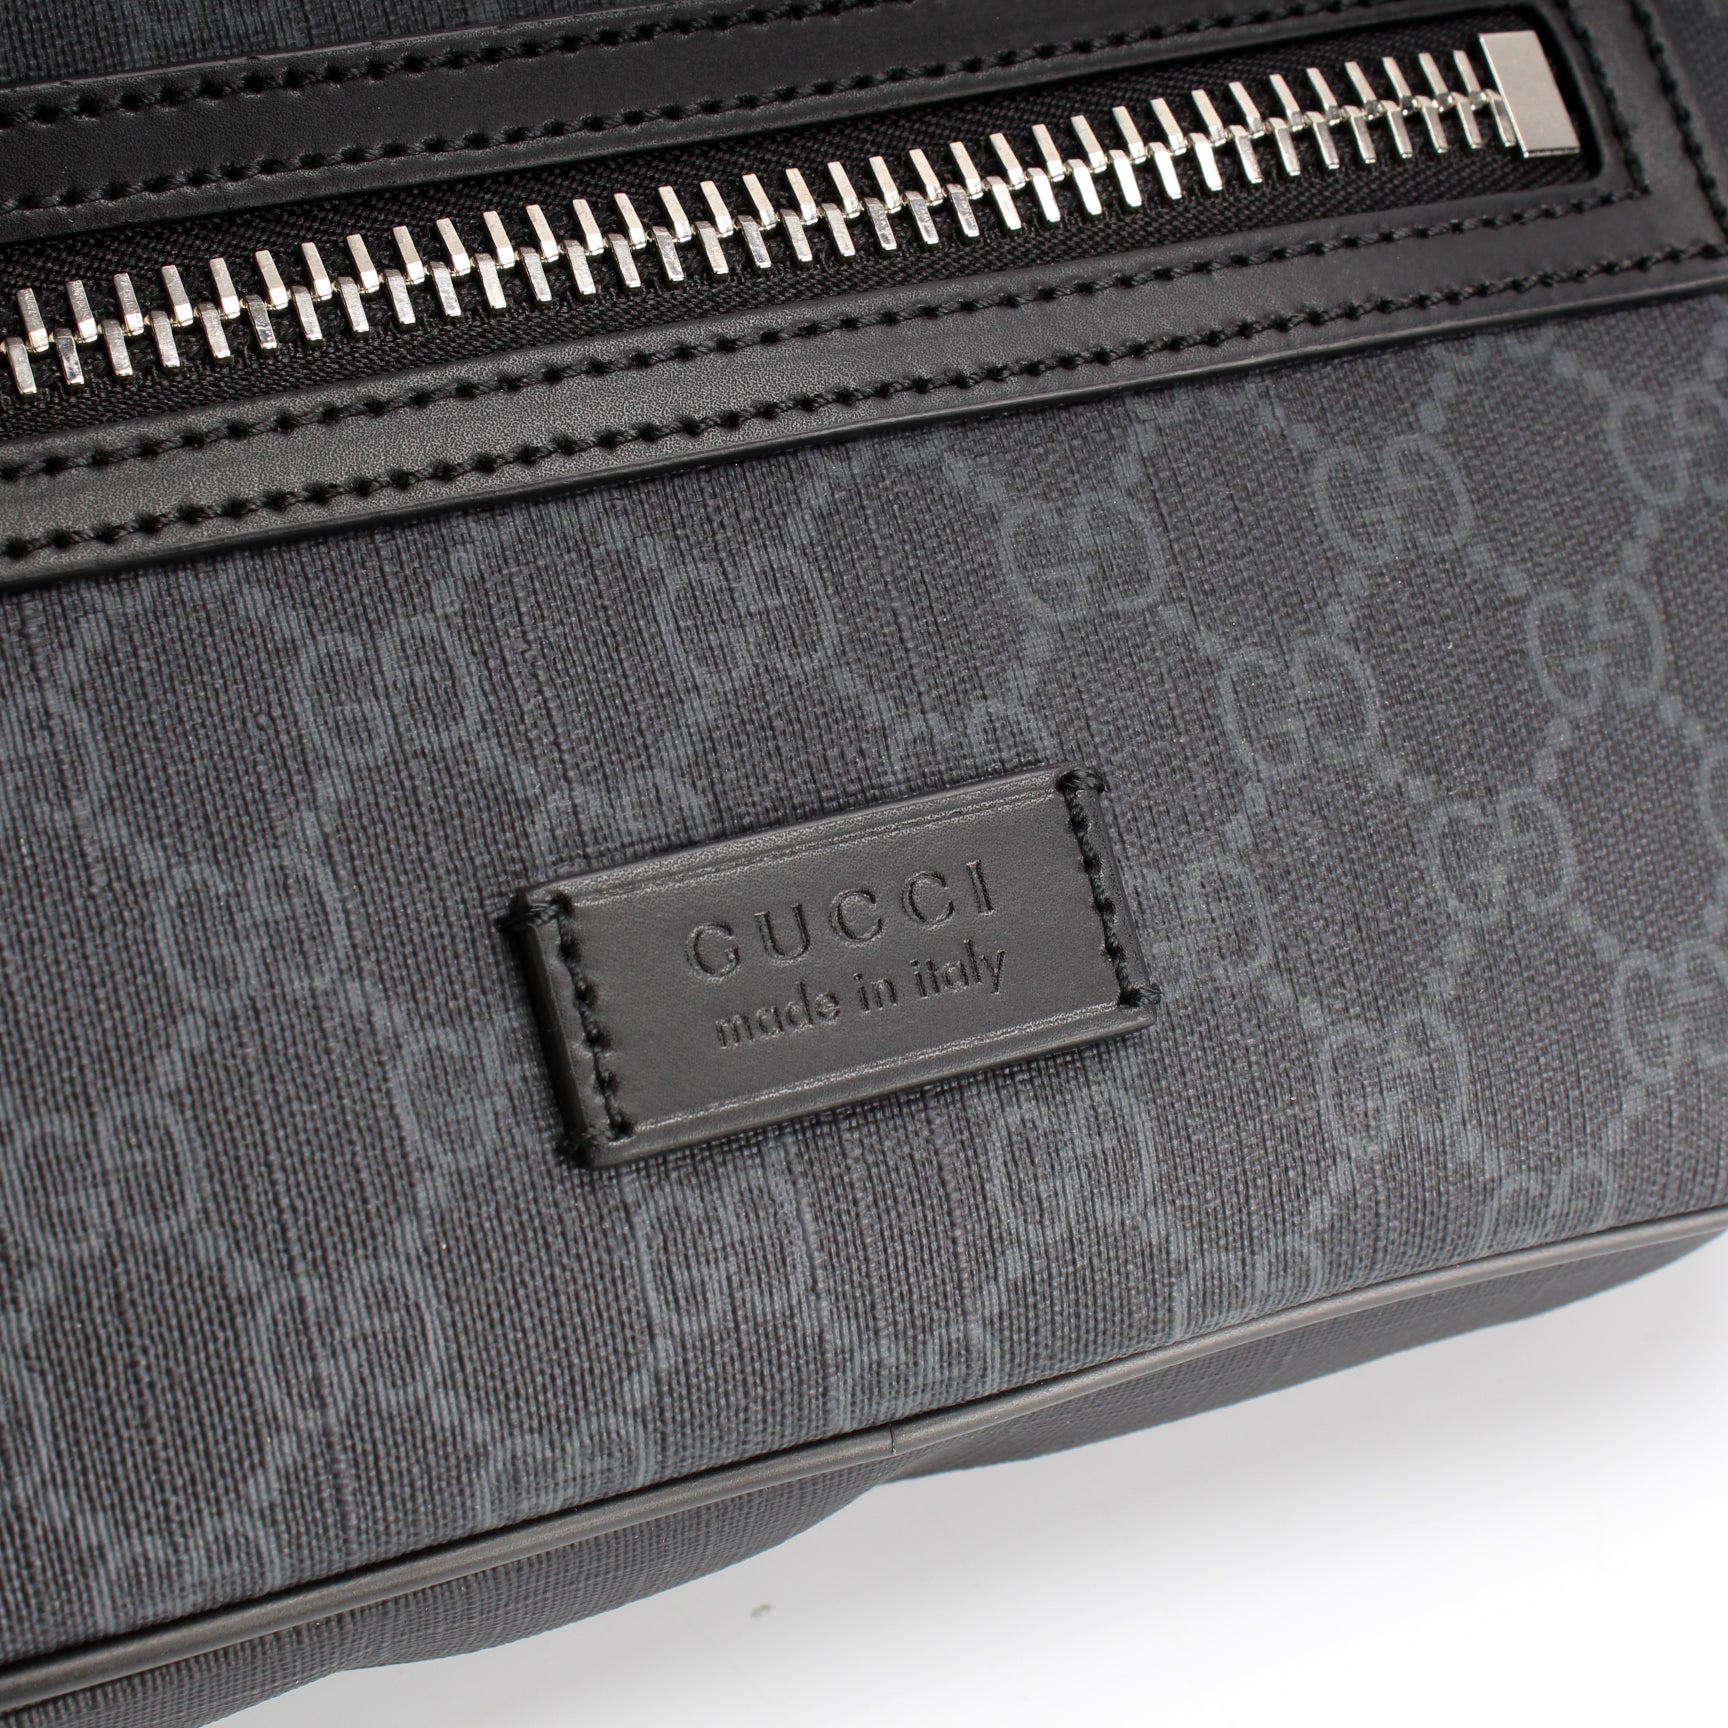 474293 Soft GG Supreme Belt Bag – Keeks Designer Handbags